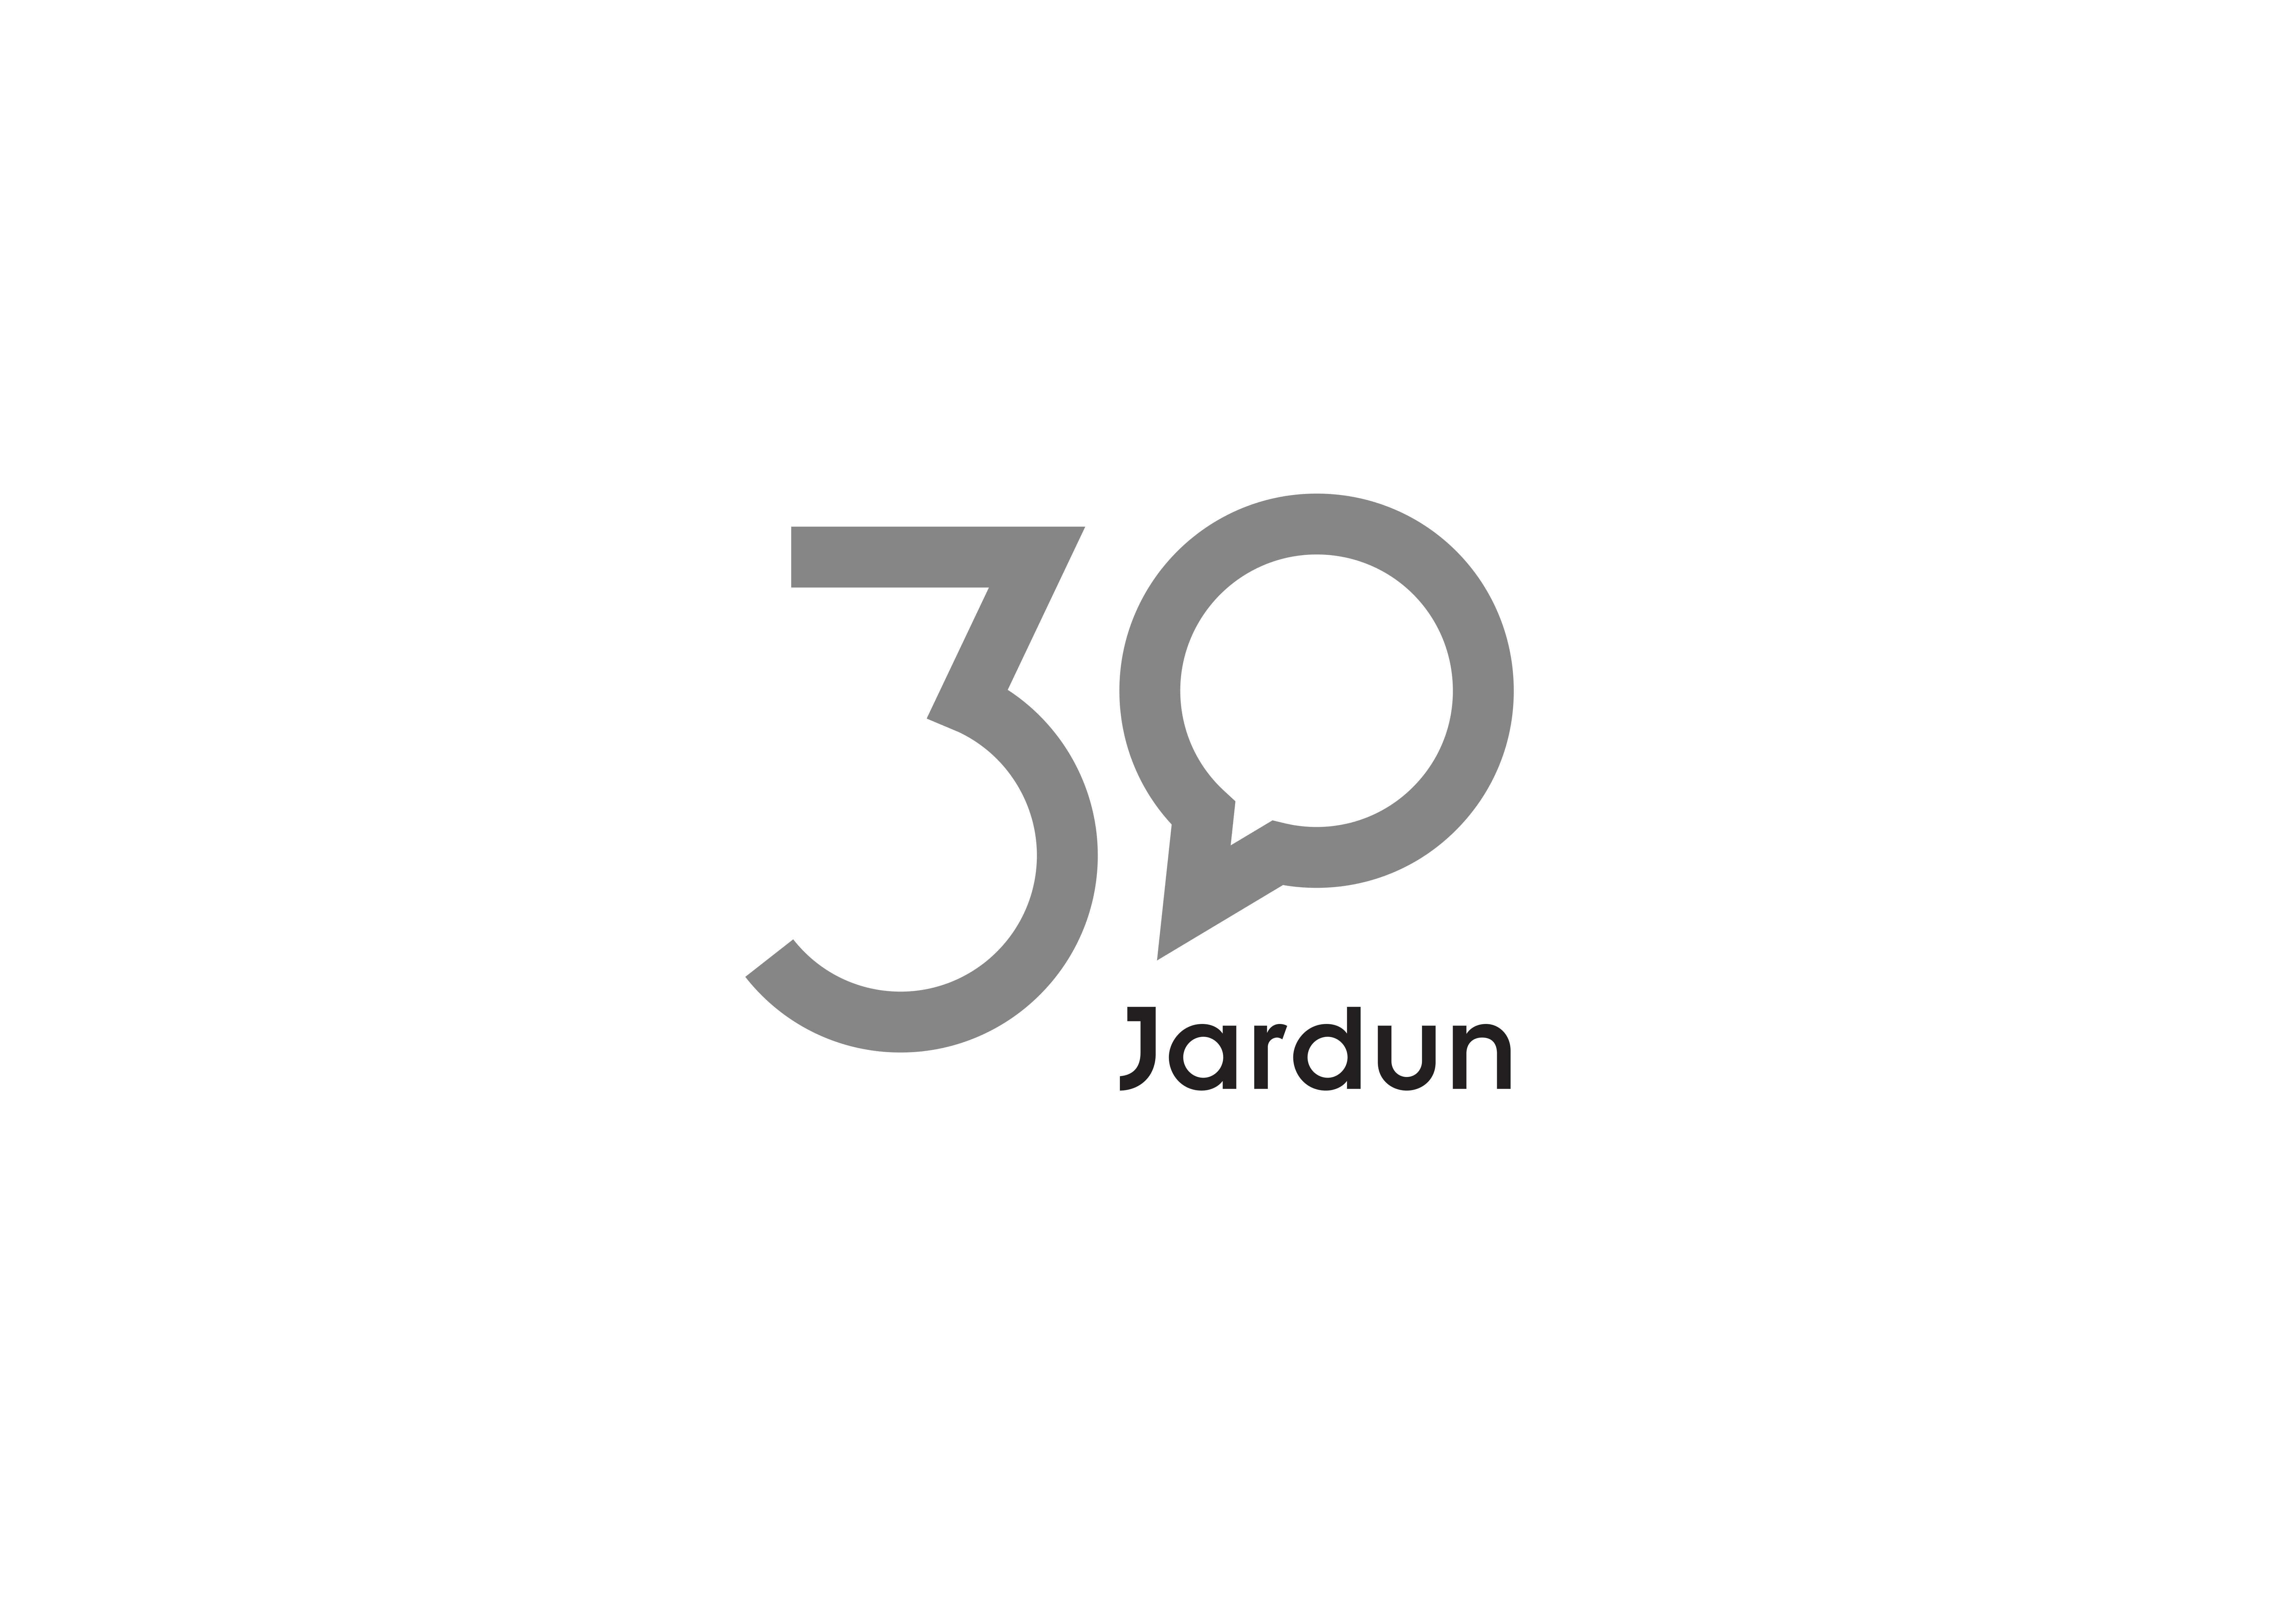 Logo_Jardun_30_001